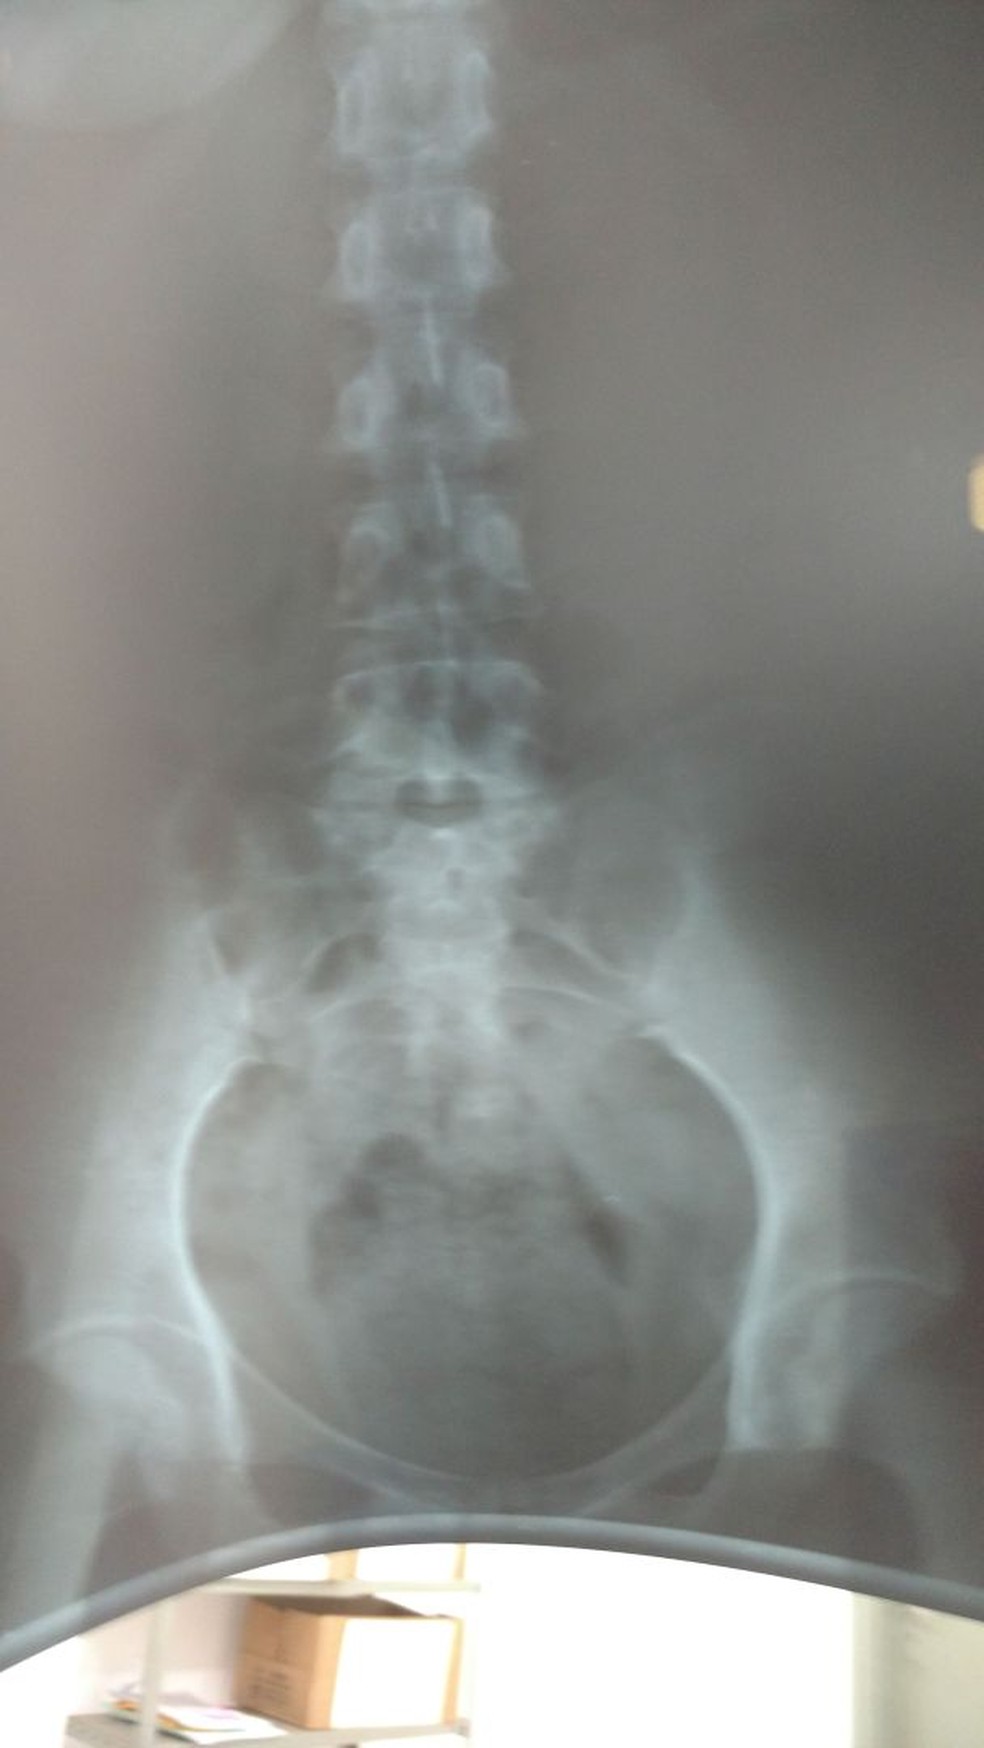 Exame de raio-x realizado na suspeita de tráfico em MS (Foto: Polícia Civil/Divulgação)